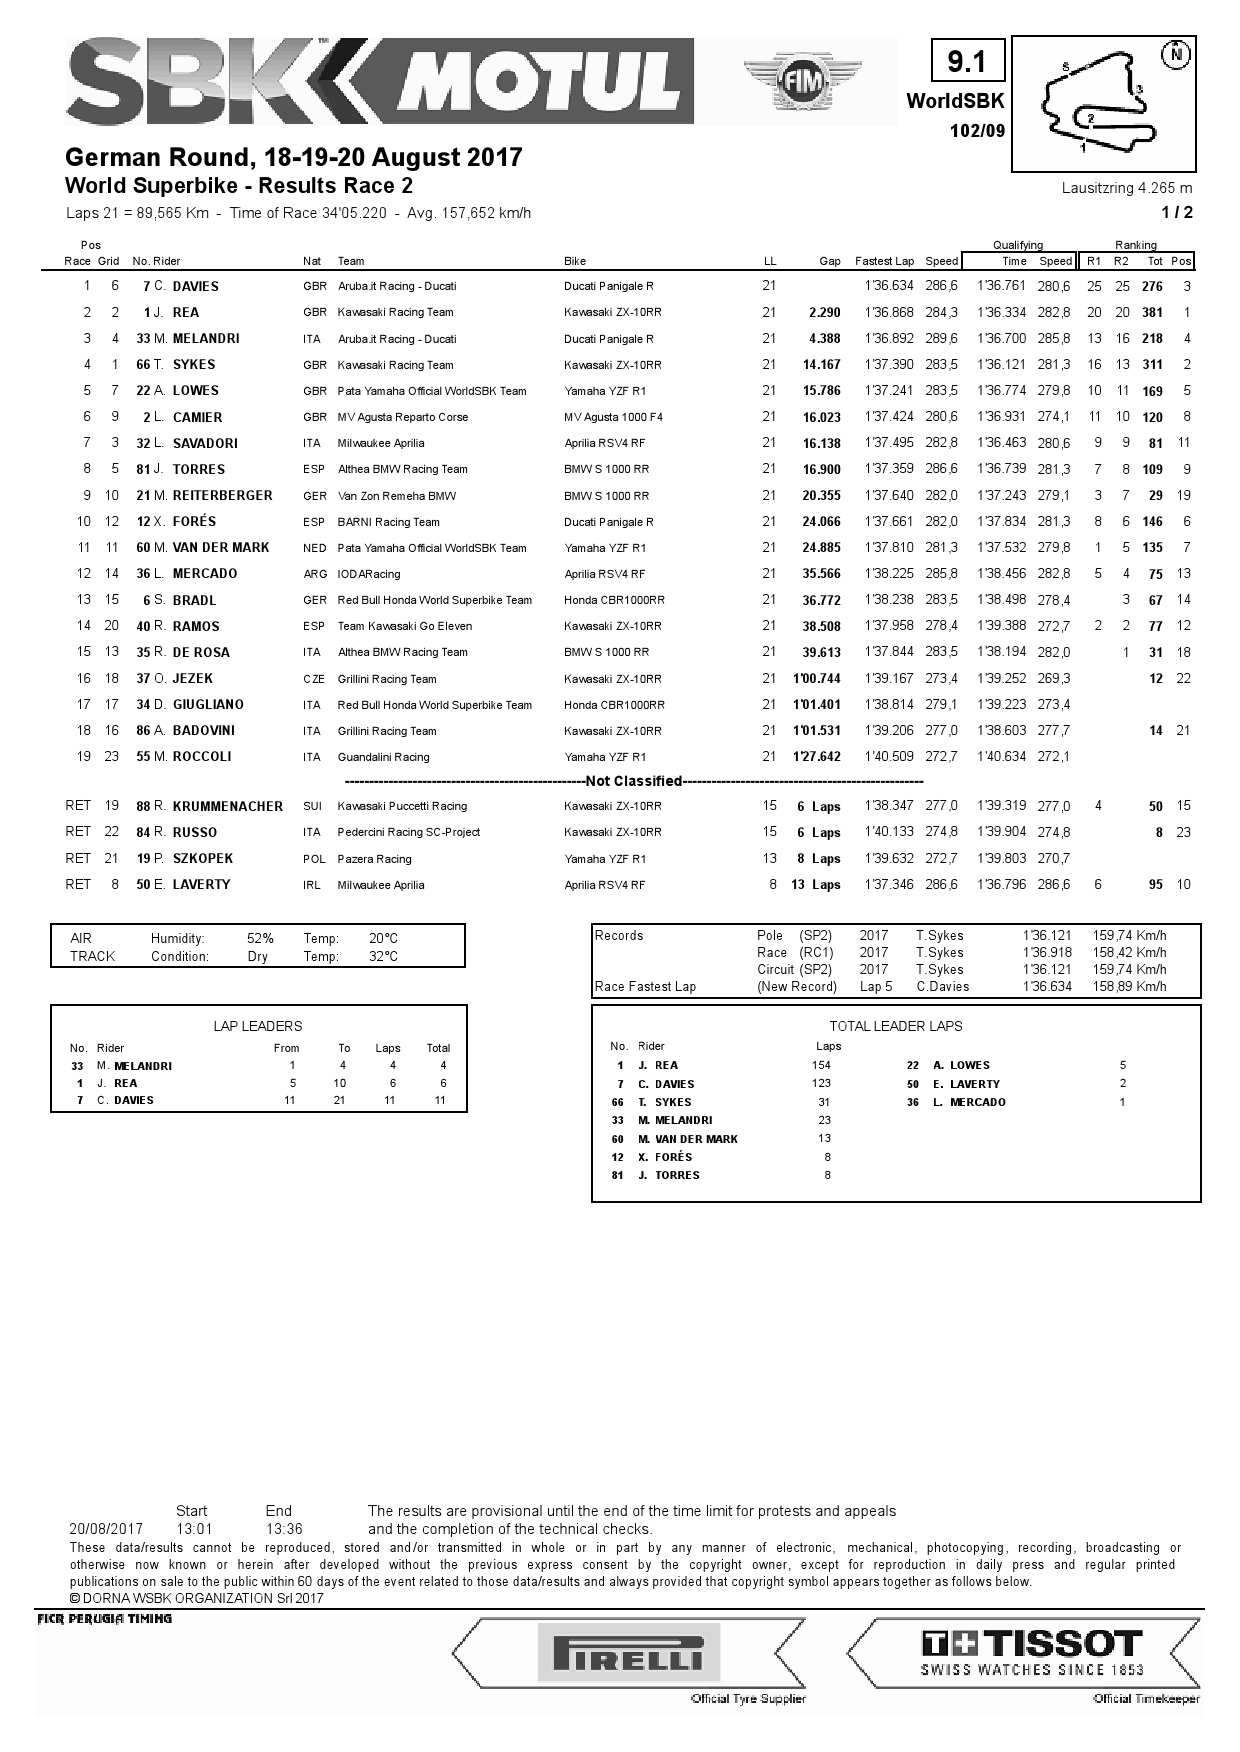 Результаты 2-й гонки World Superbike в Lausitzring, 20.08.2017